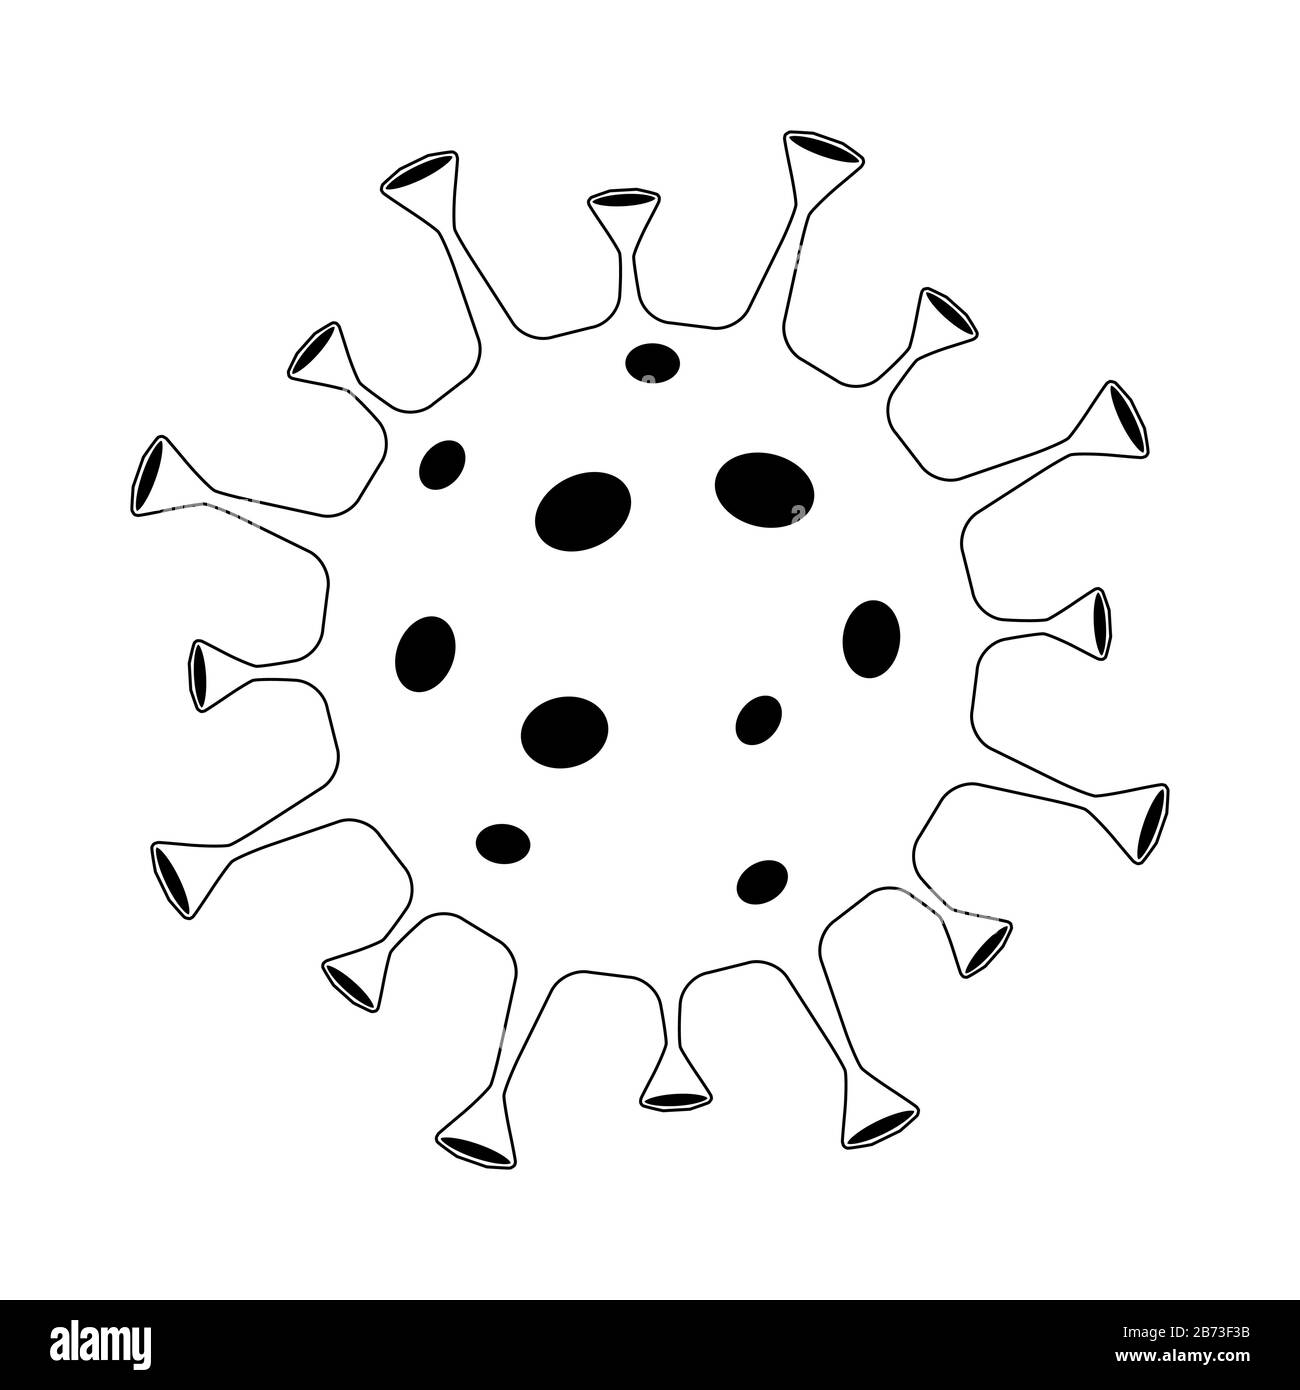 Profilo del virus Corona su sfondo bianco. Coronavirus in Wuhan icona simbolo isolato. Infezione respiratoria patogena cinese (epidemia di influenza asiatica). Illustrazione Vettoriale